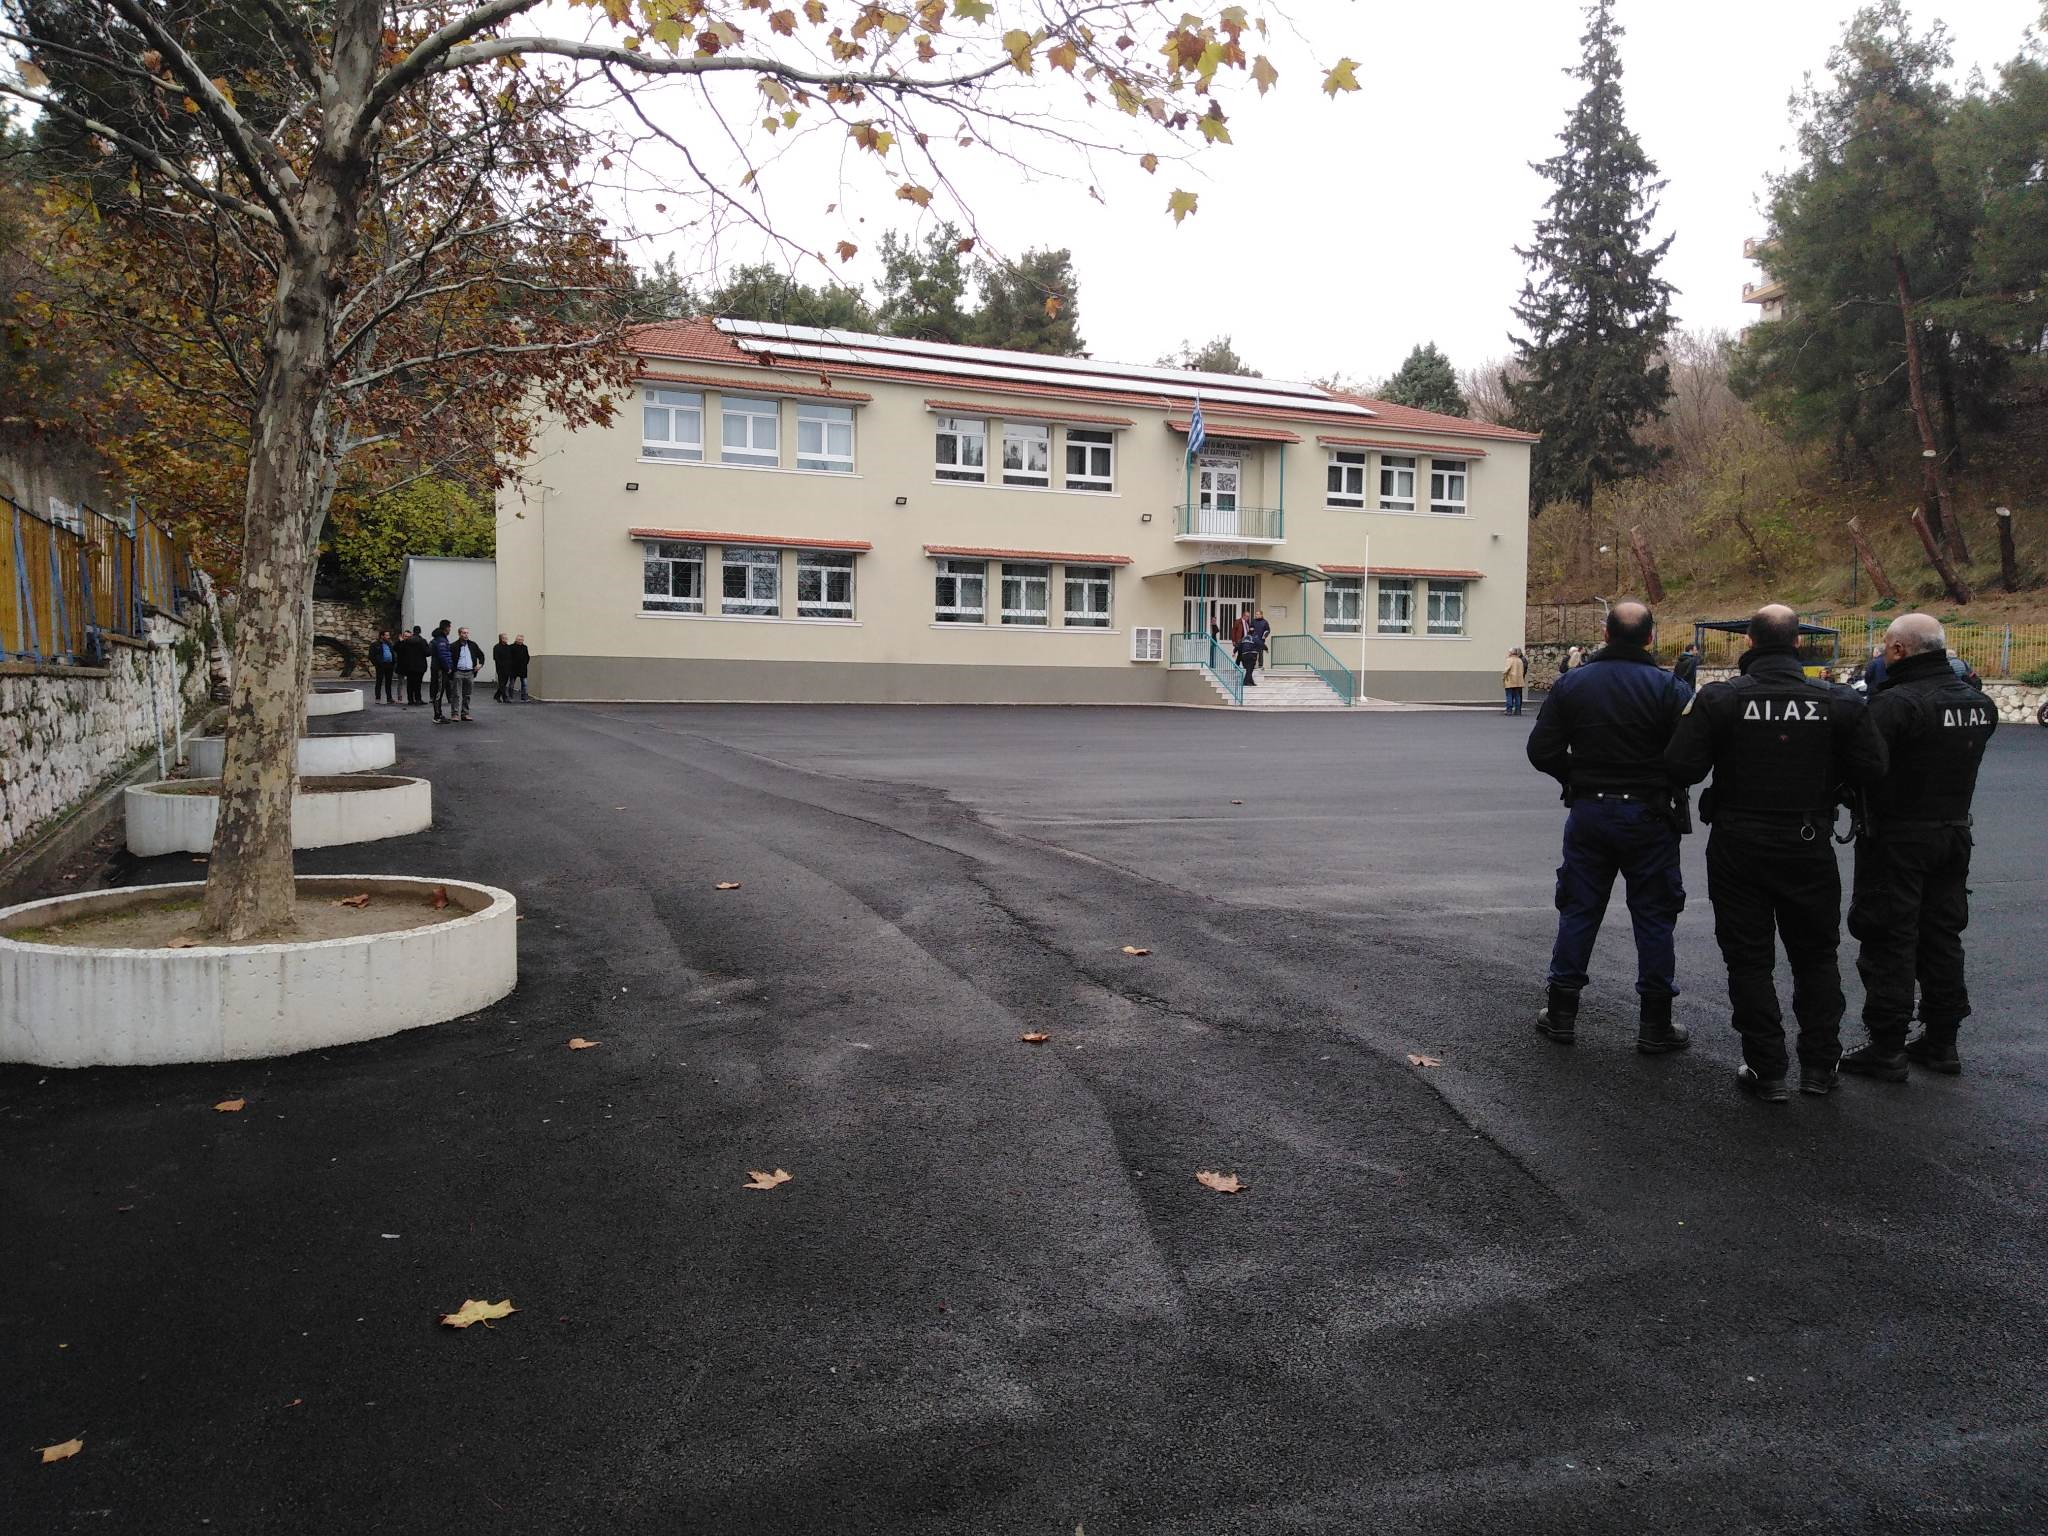 Τραγικός θάνατος μαθητή στις Σέρρες: Έσκασε ο λέβητας και τον καταπλάκωσε η πόρτα του λεβητοστασίου στην αυλή του του σχολείου